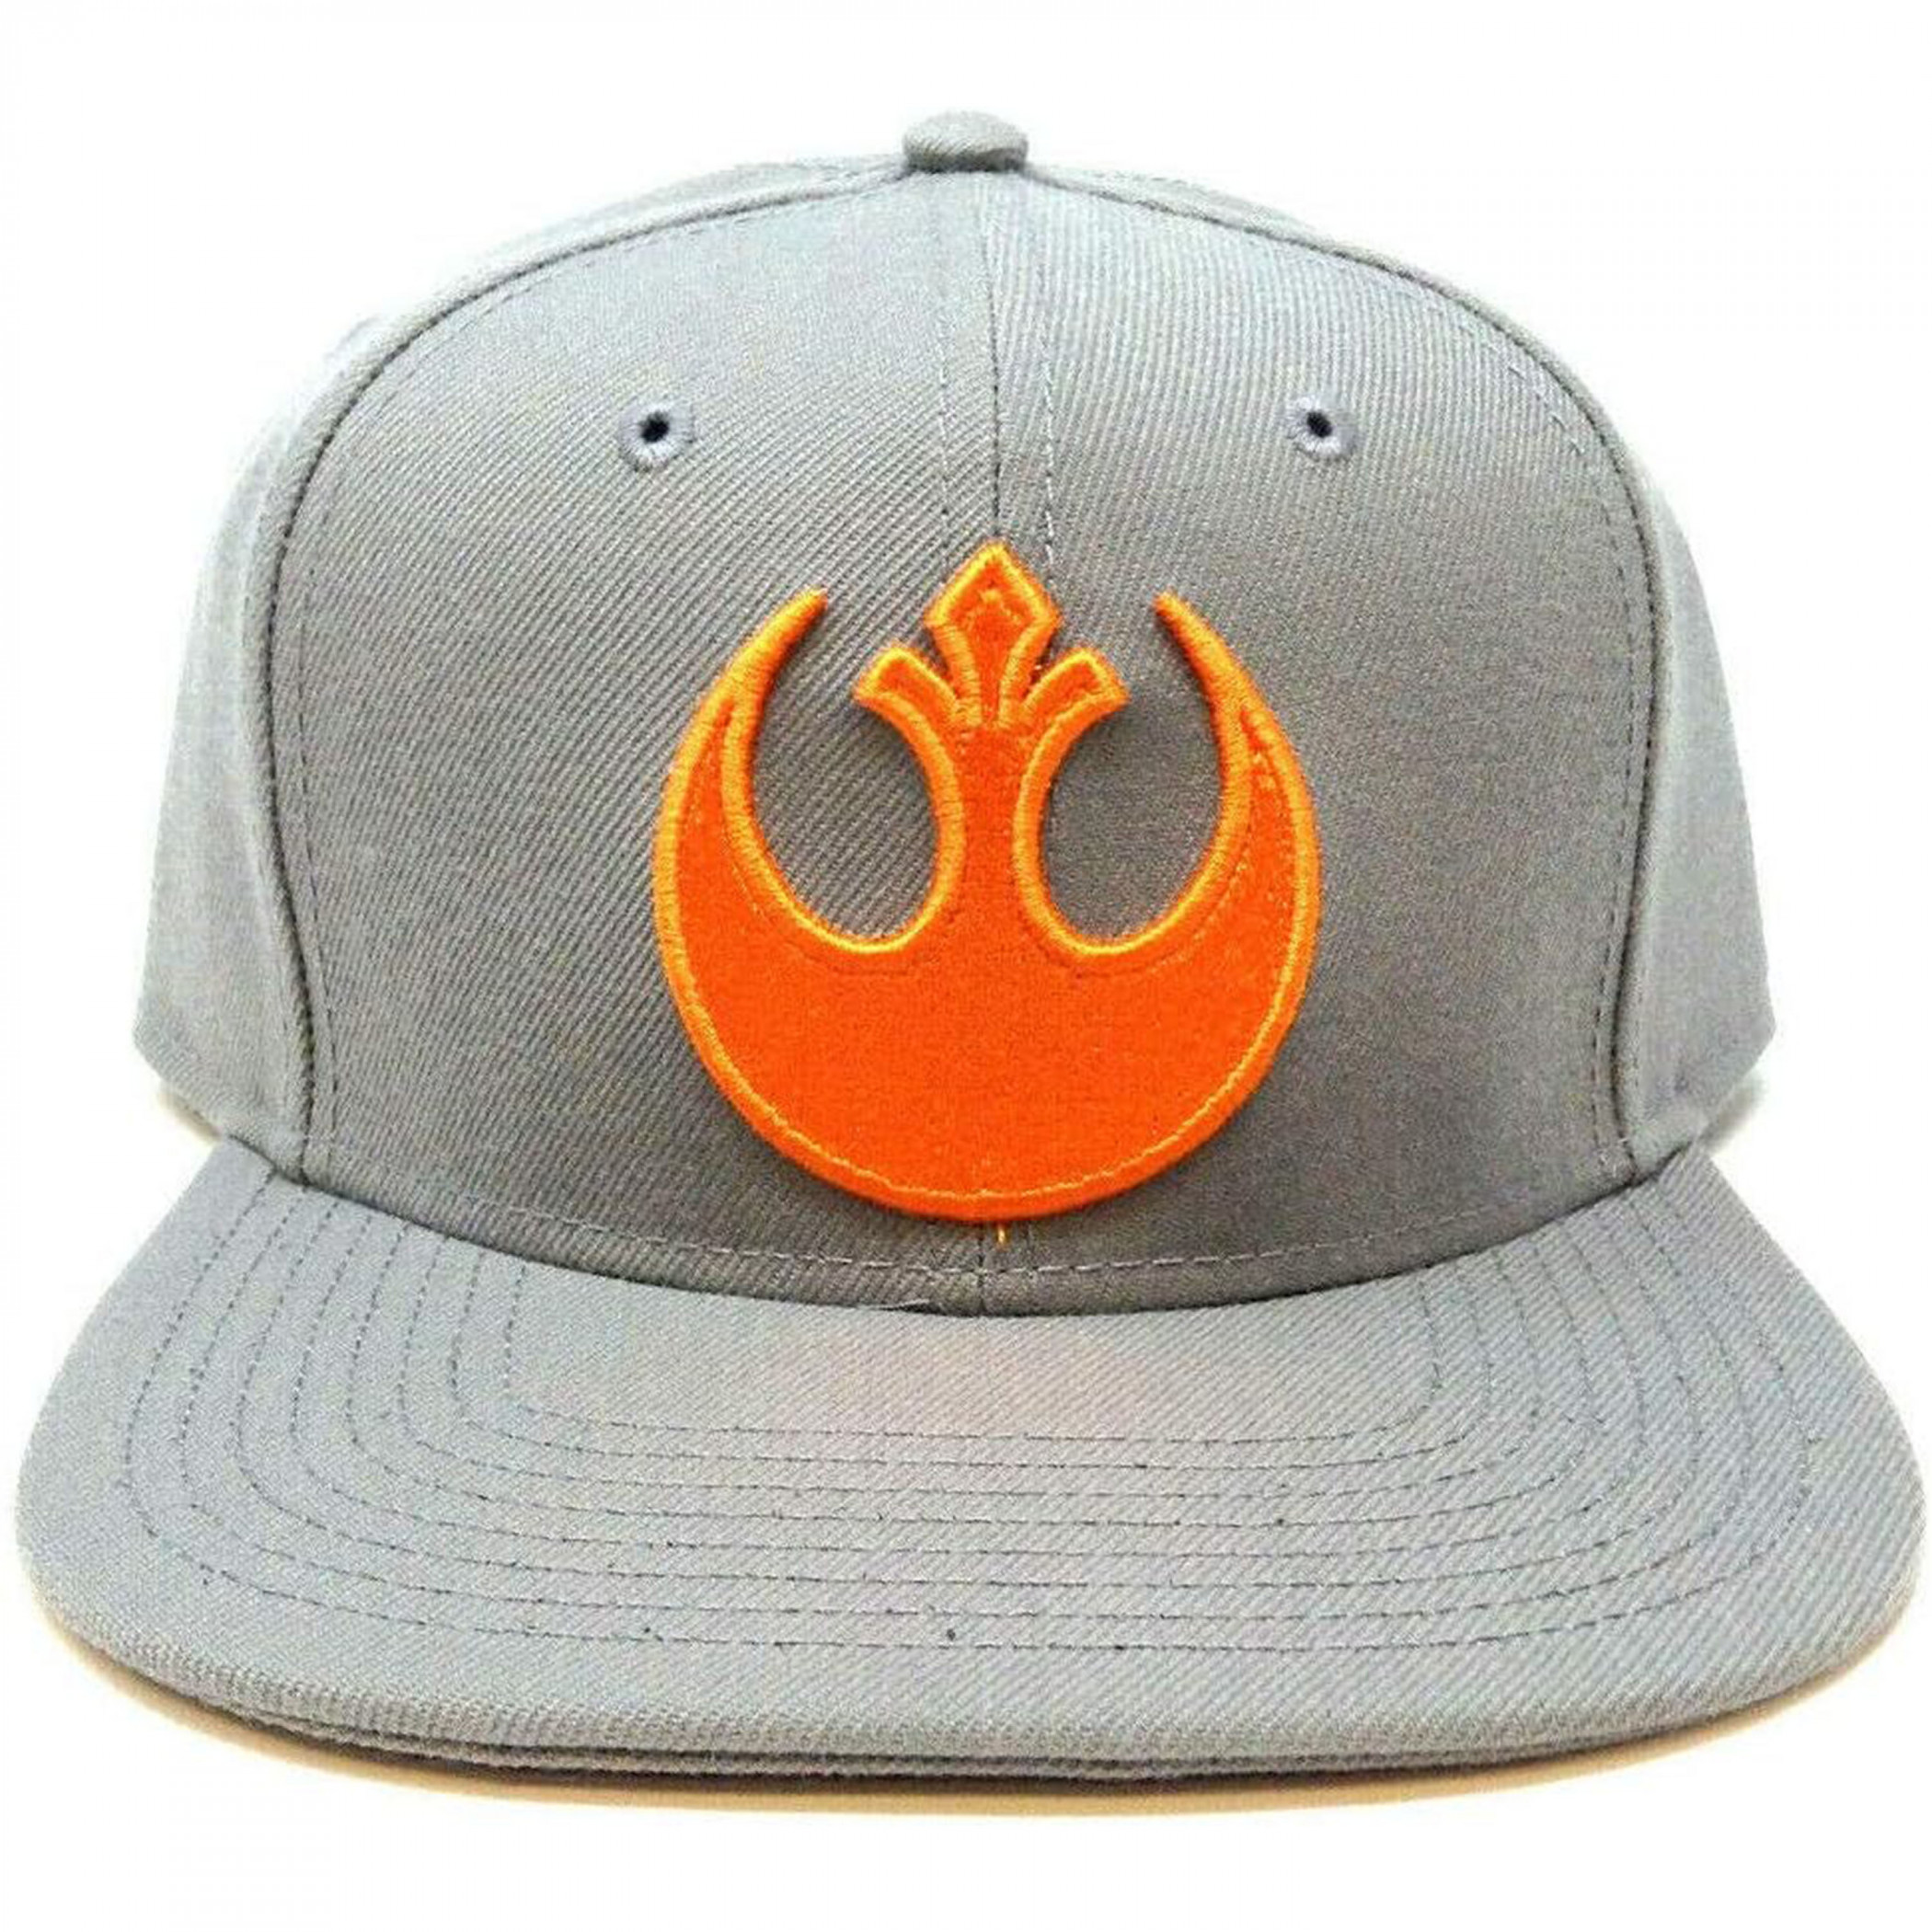 Star Wars Rebel Crest Flat Bill Snapback Hat